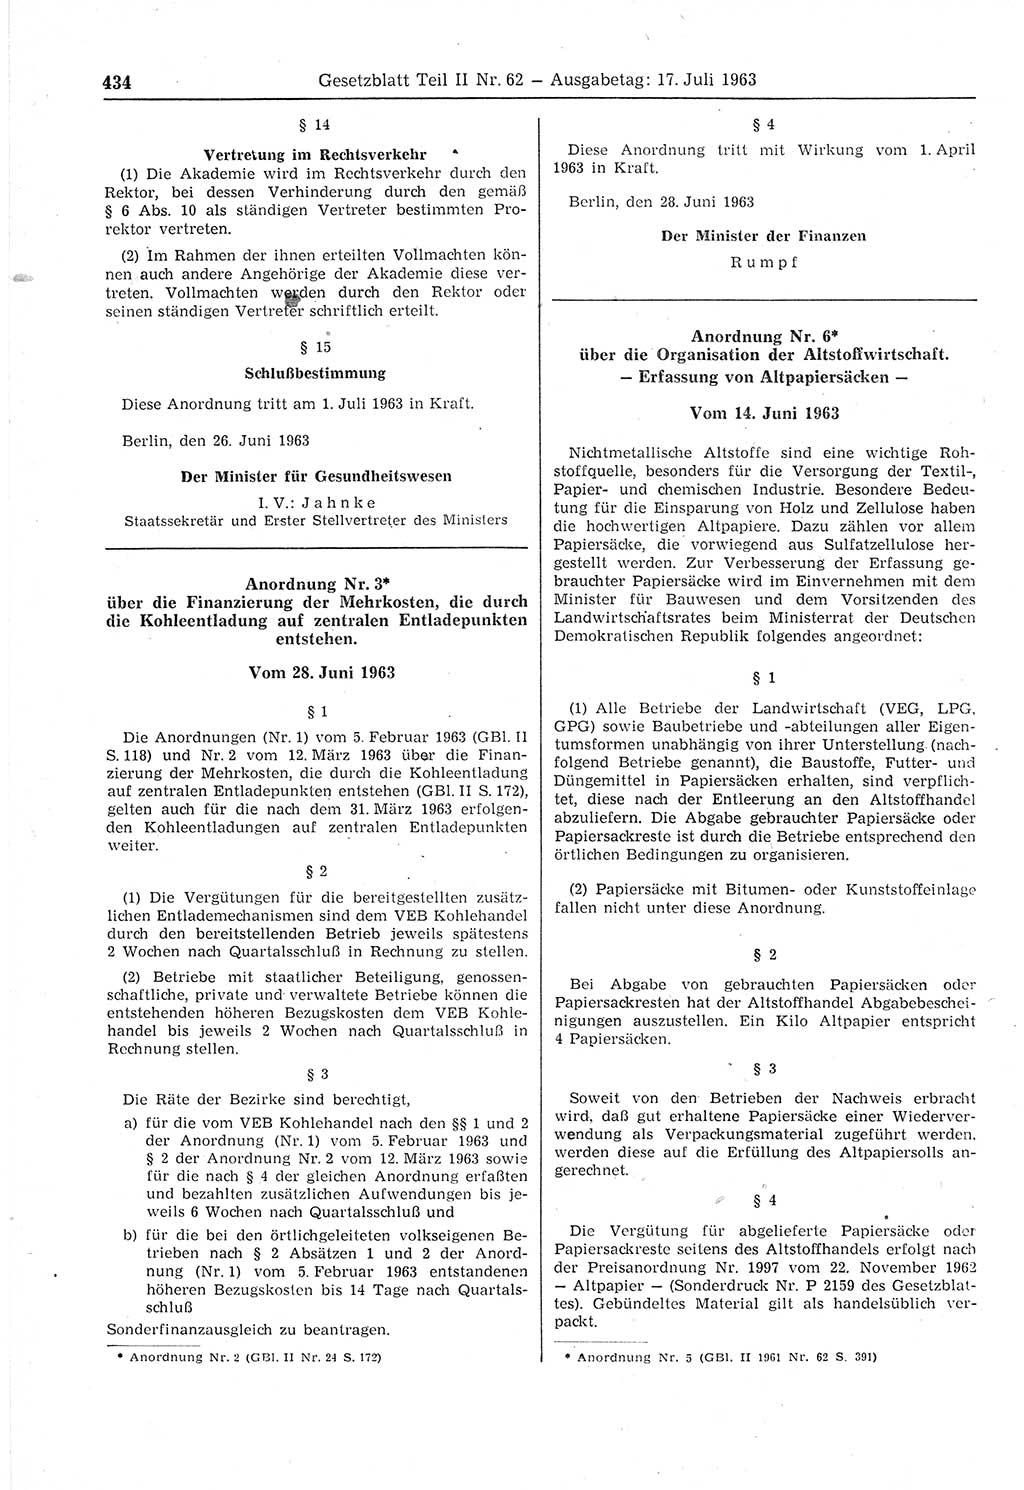 Gesetzblatt (GBl.) der Deutschen Demokratischen Republik (DDR) Teil ⅠⅠ 1963, Seite 434 (GBl. DDR ⅠⅠ 1963, S. 434)